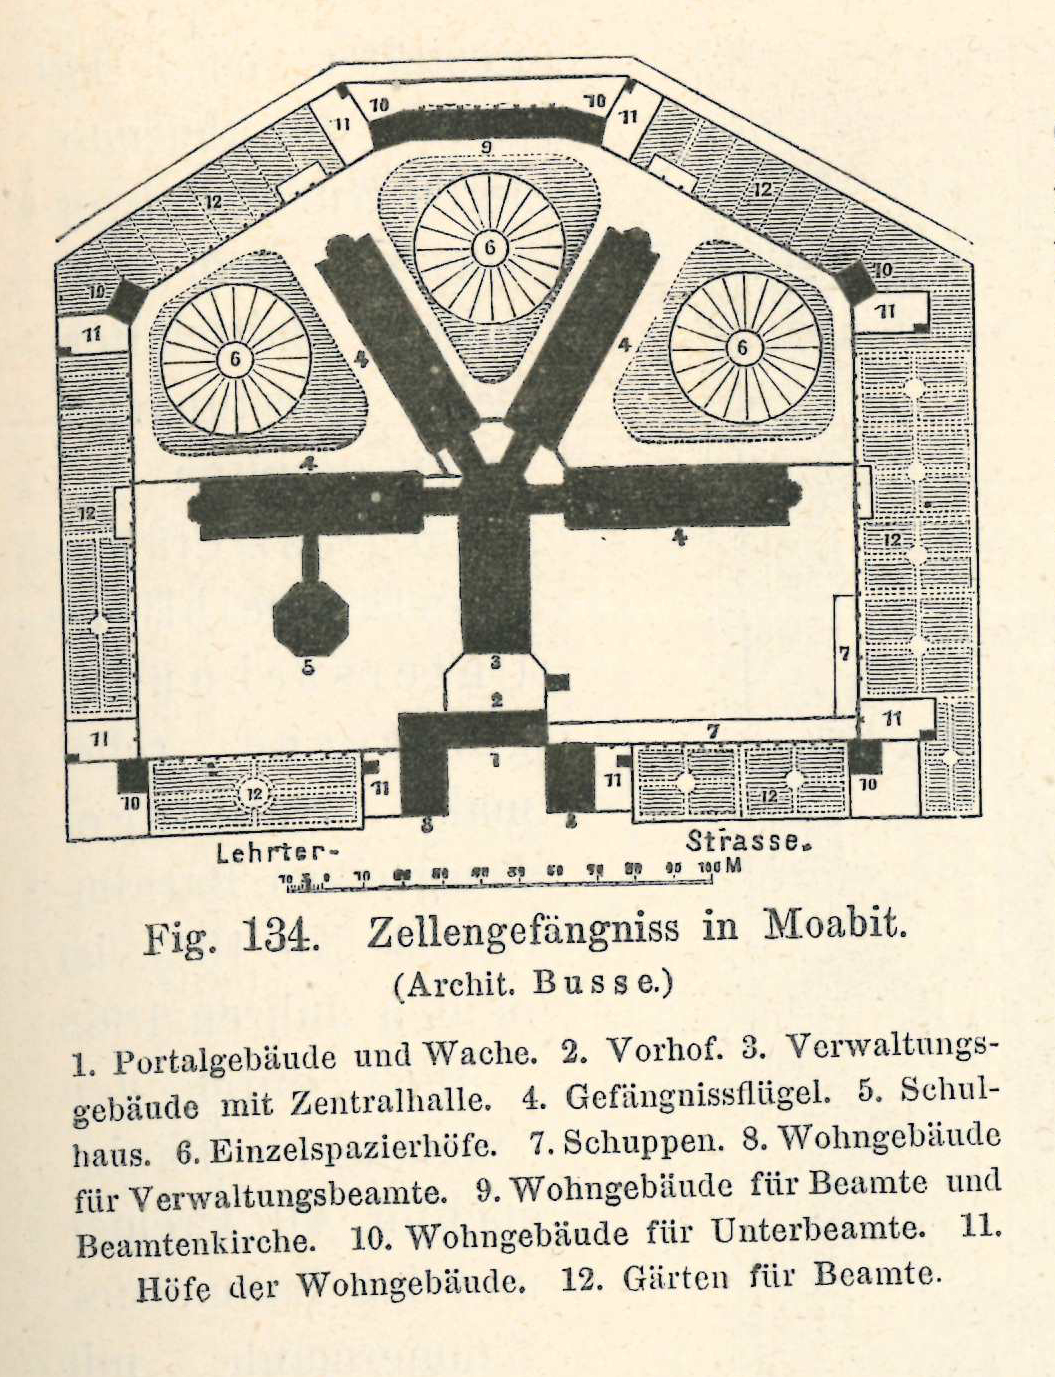 Plan des Zellengefängniss in Moabit, aus: Berlin und seine Bauten. Erster Theil, Hg. vom Architekten-Verein zu Berlin, Berlin 1877, S. 231